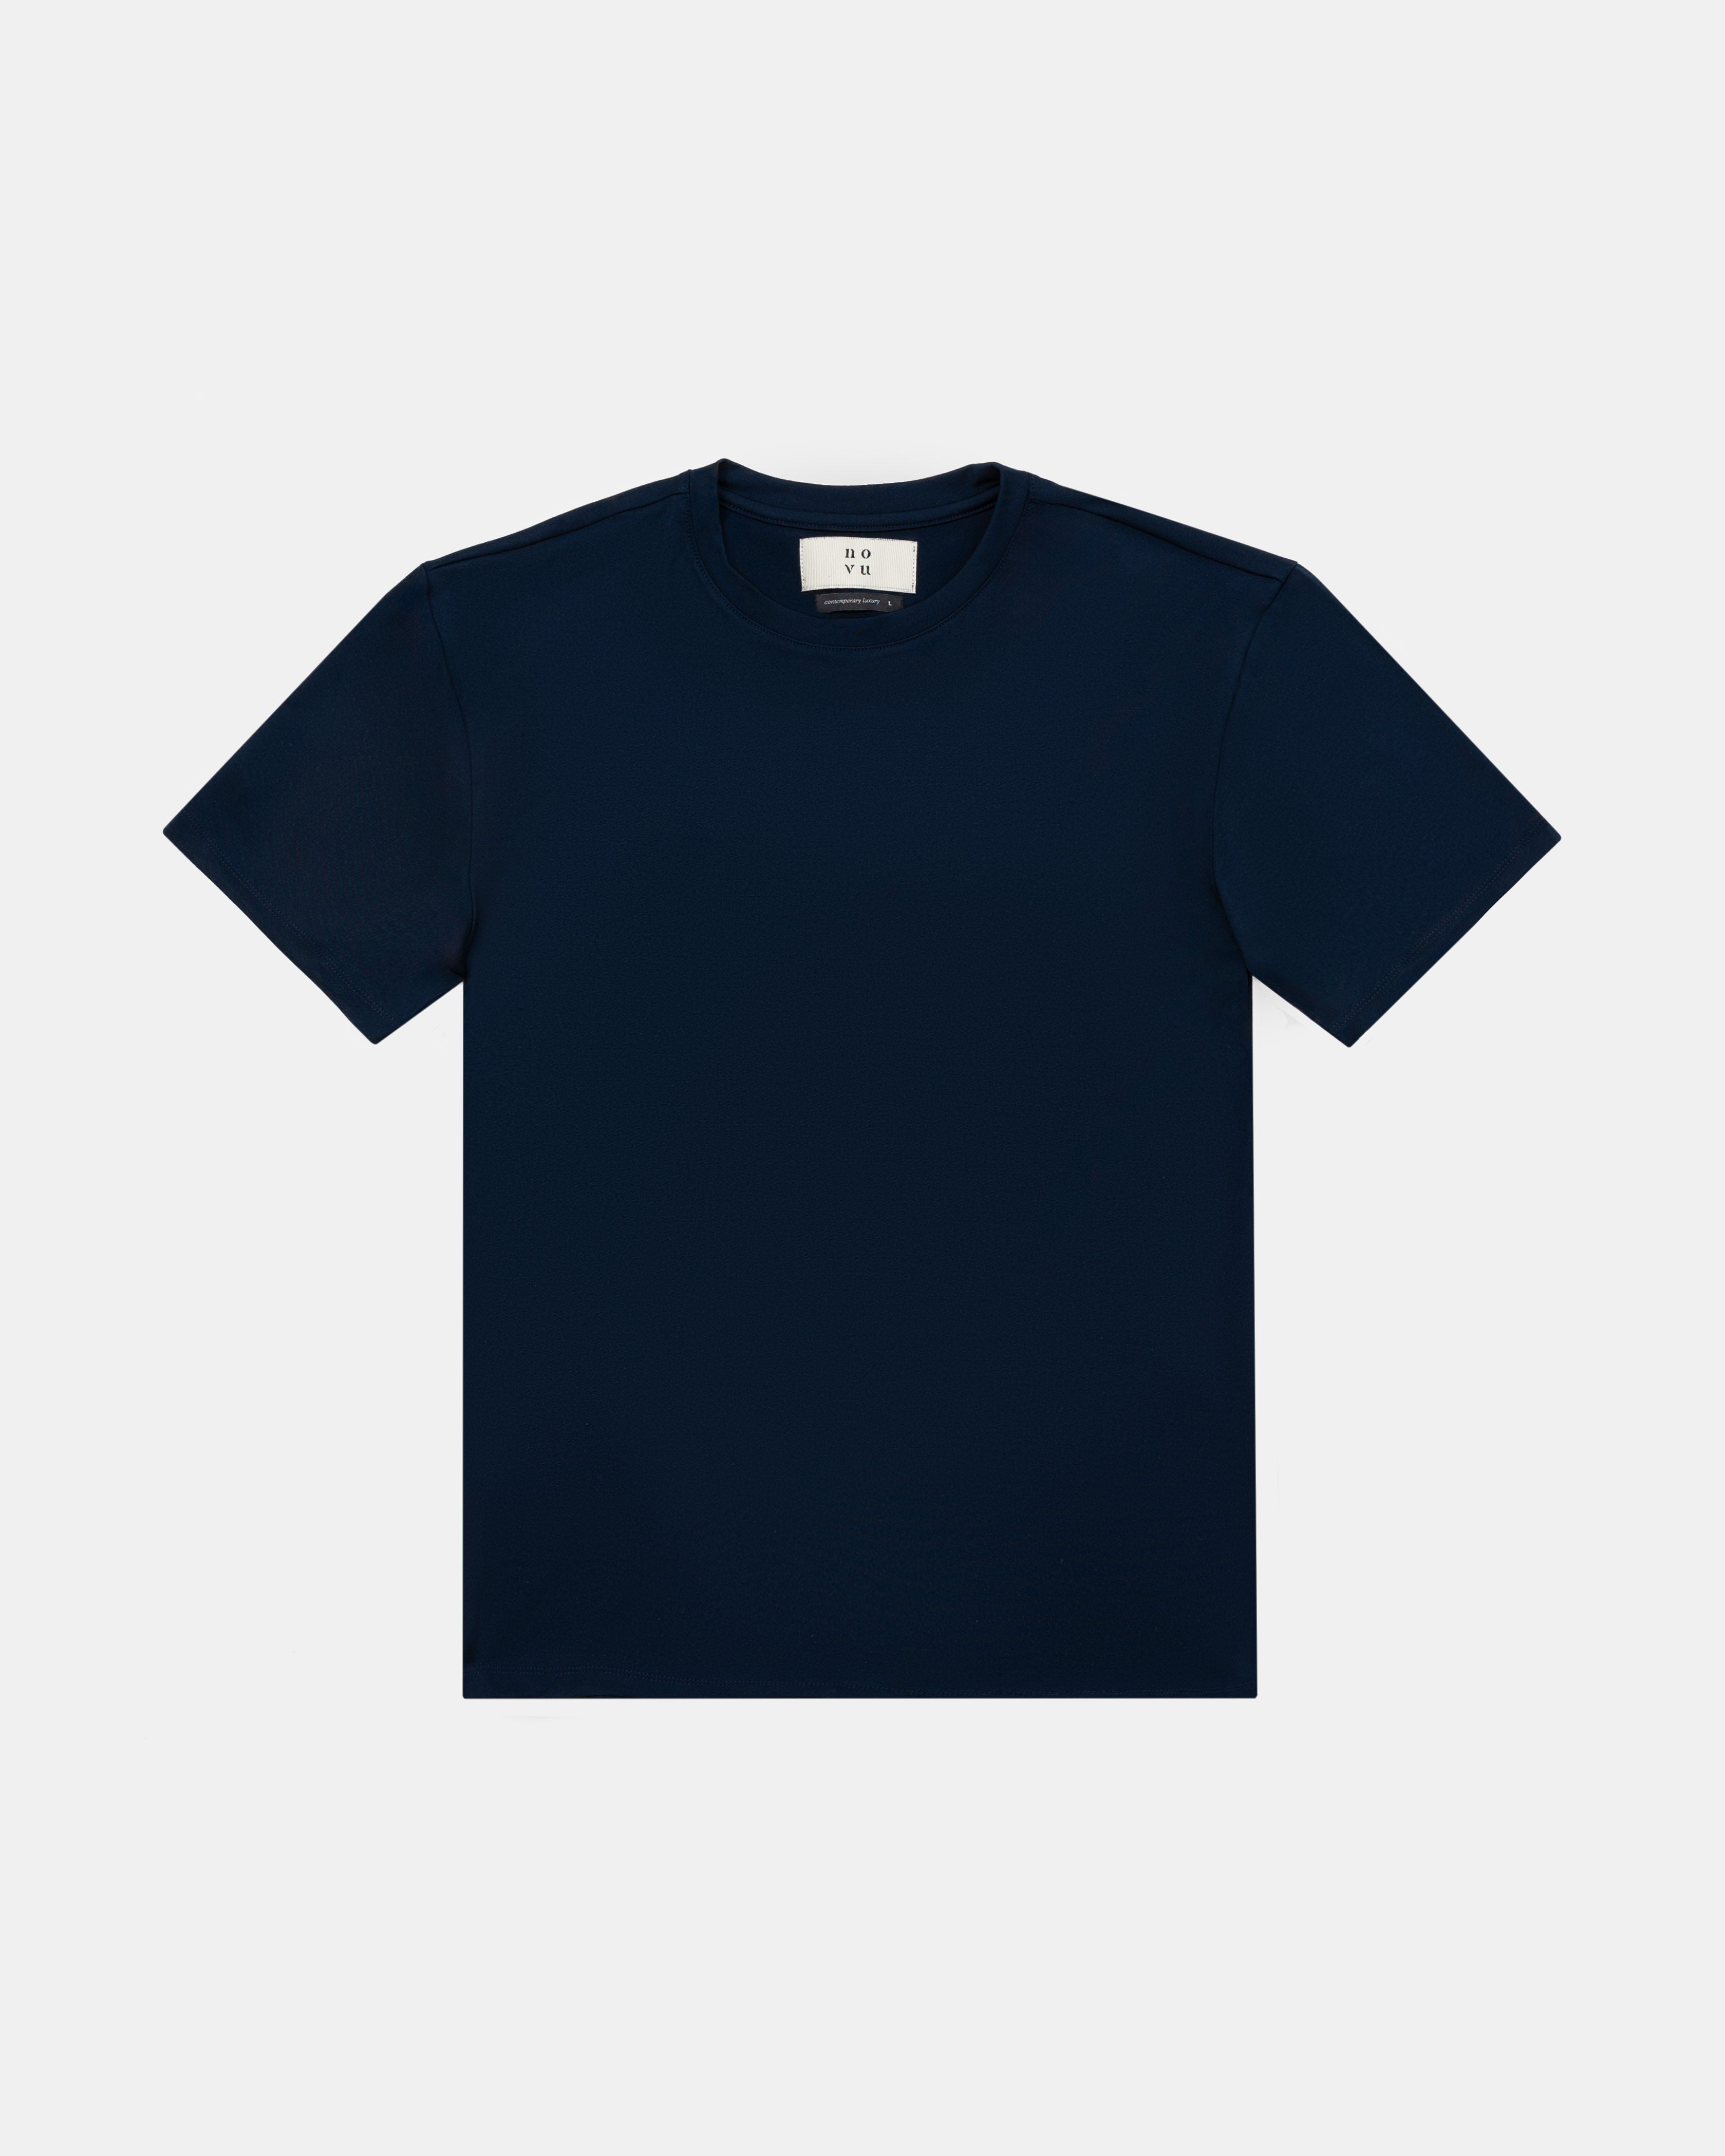 Luxe T-shirt Navy